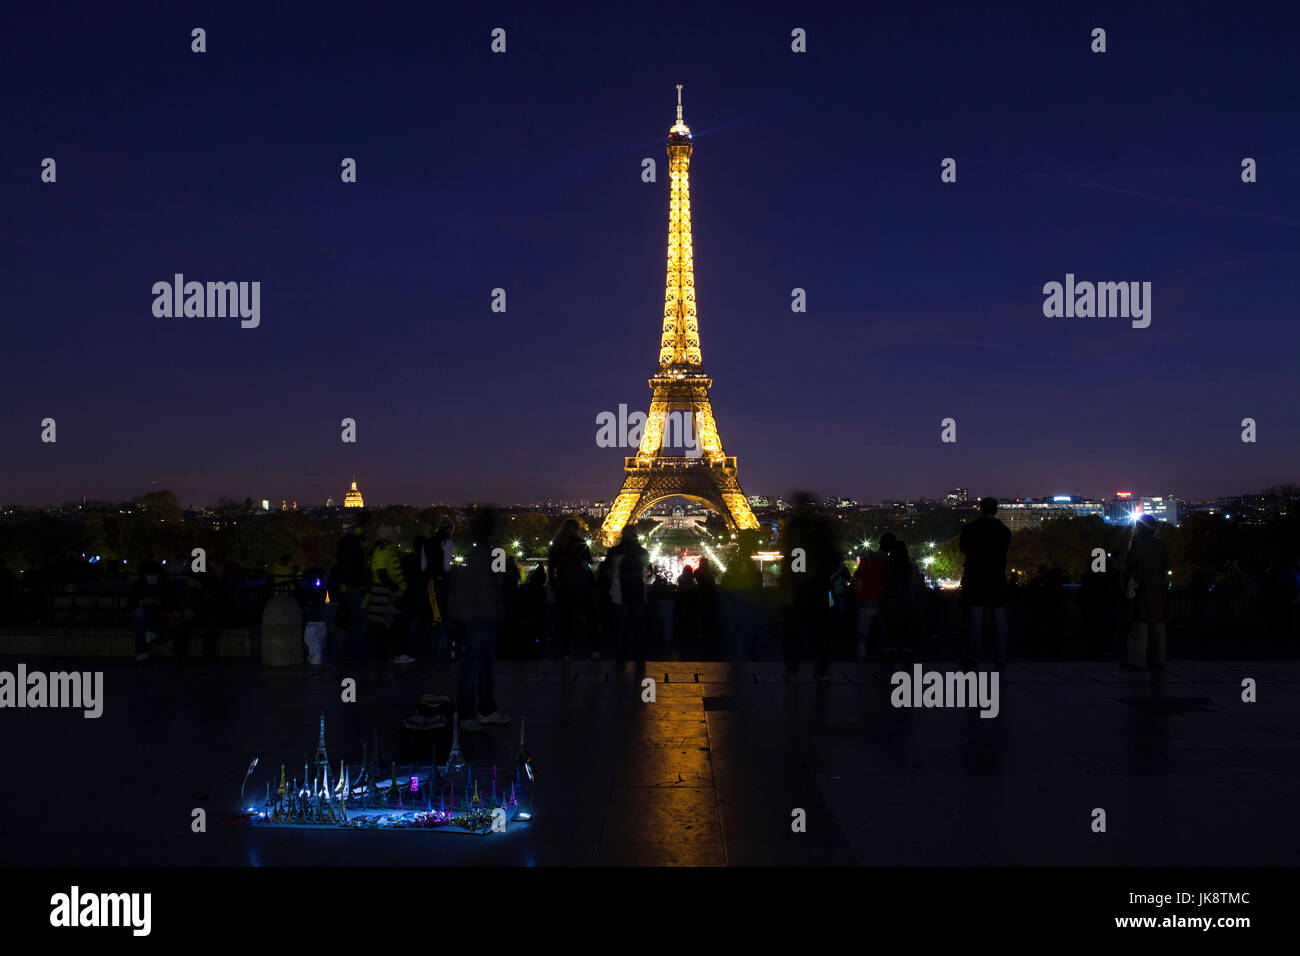 France, Paris, Eiffel Tower, dusk with souvenirs Stock Photo